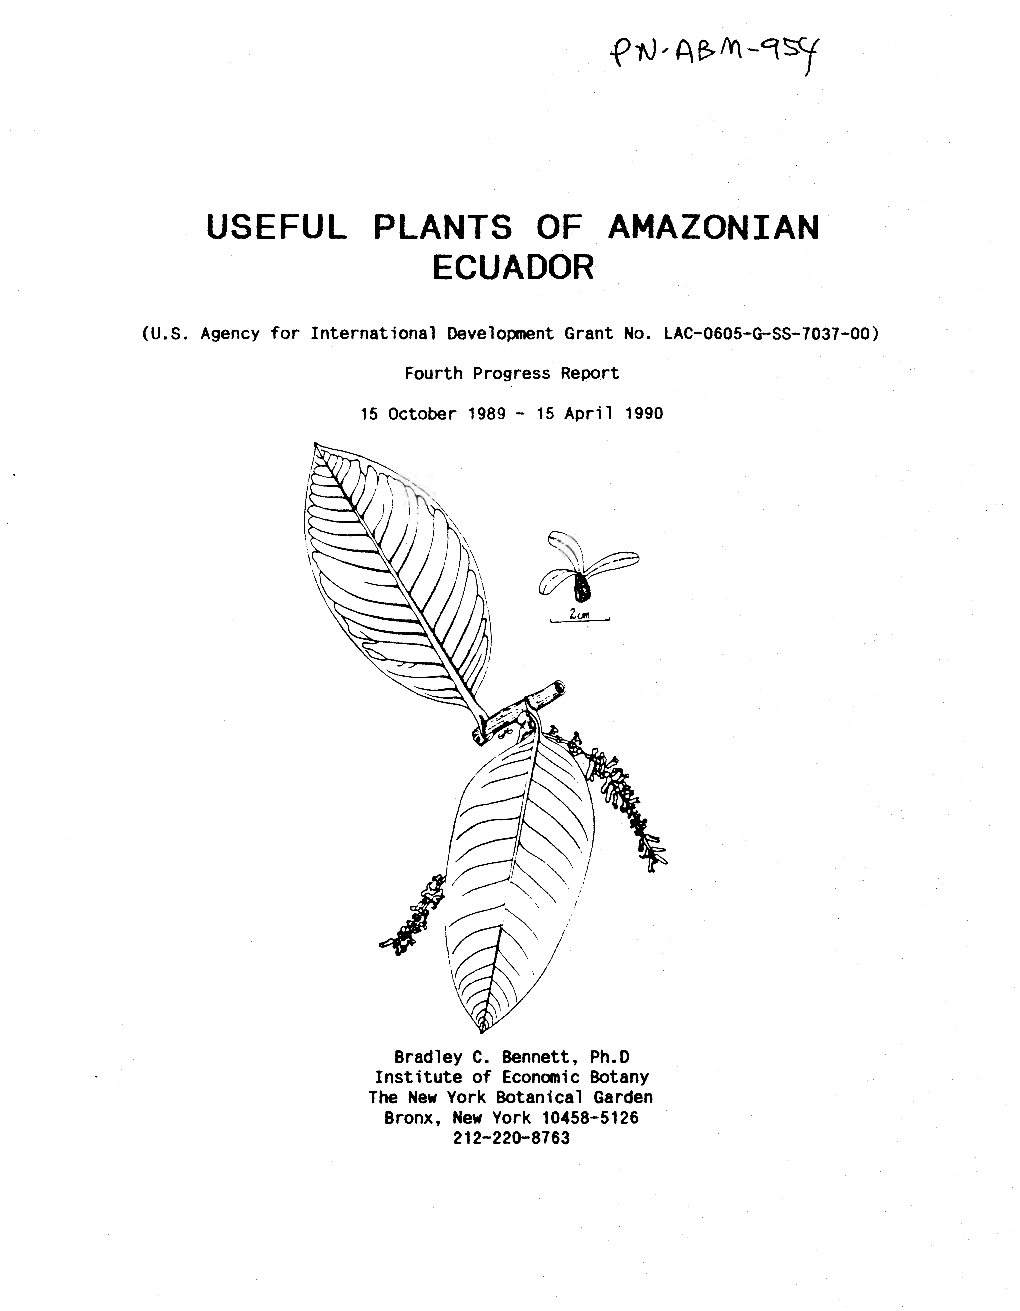 Useful Plants of Amazonian Ecuador